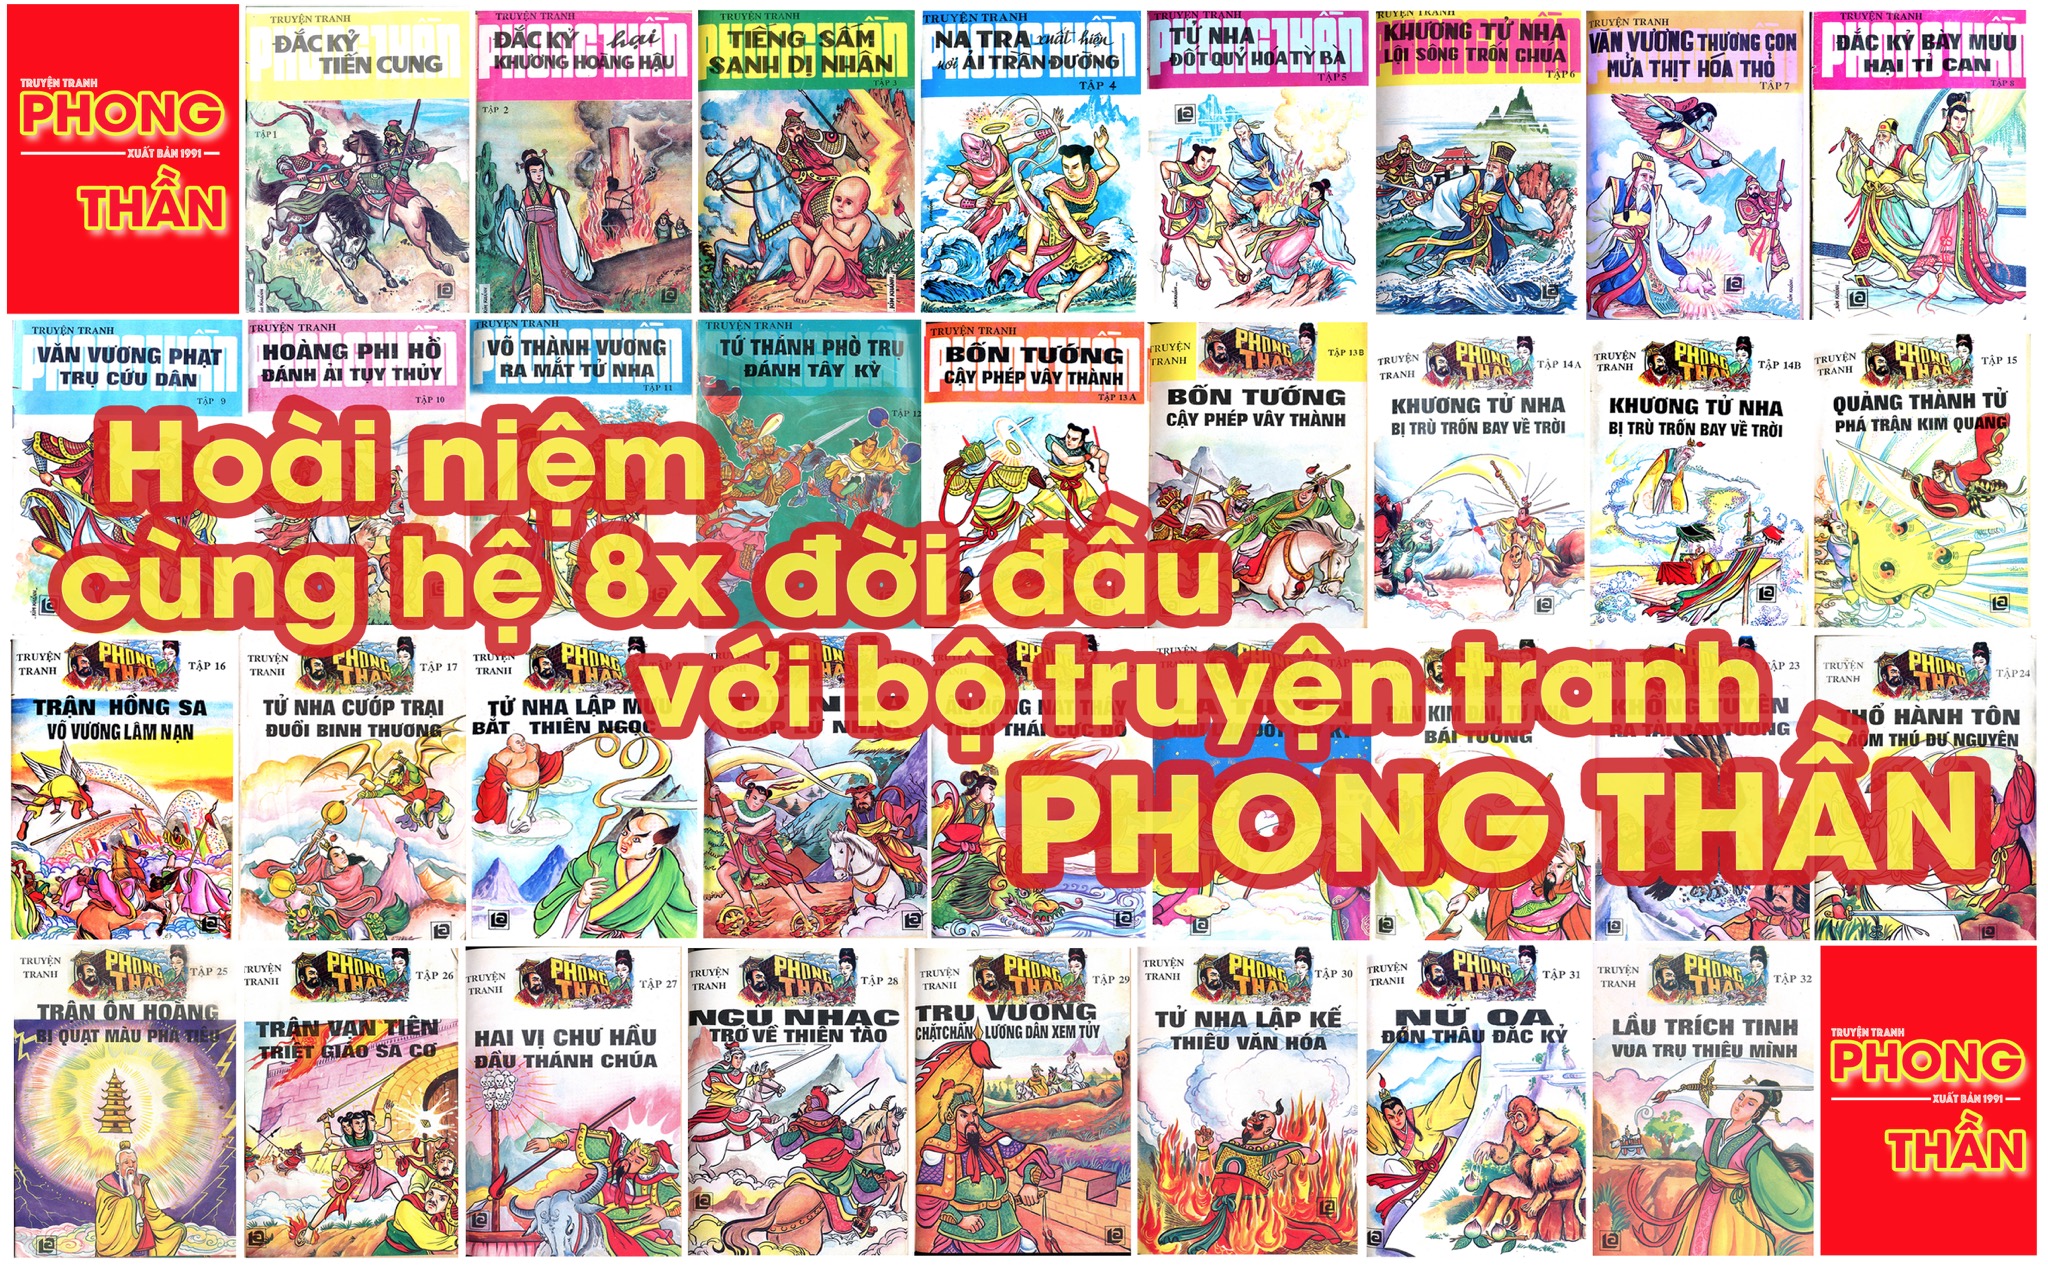 Hoài niệm cùng thế hệ 8x đời đầu với bộ truyện tranh “Phong Thần” xuất bản năm 1991